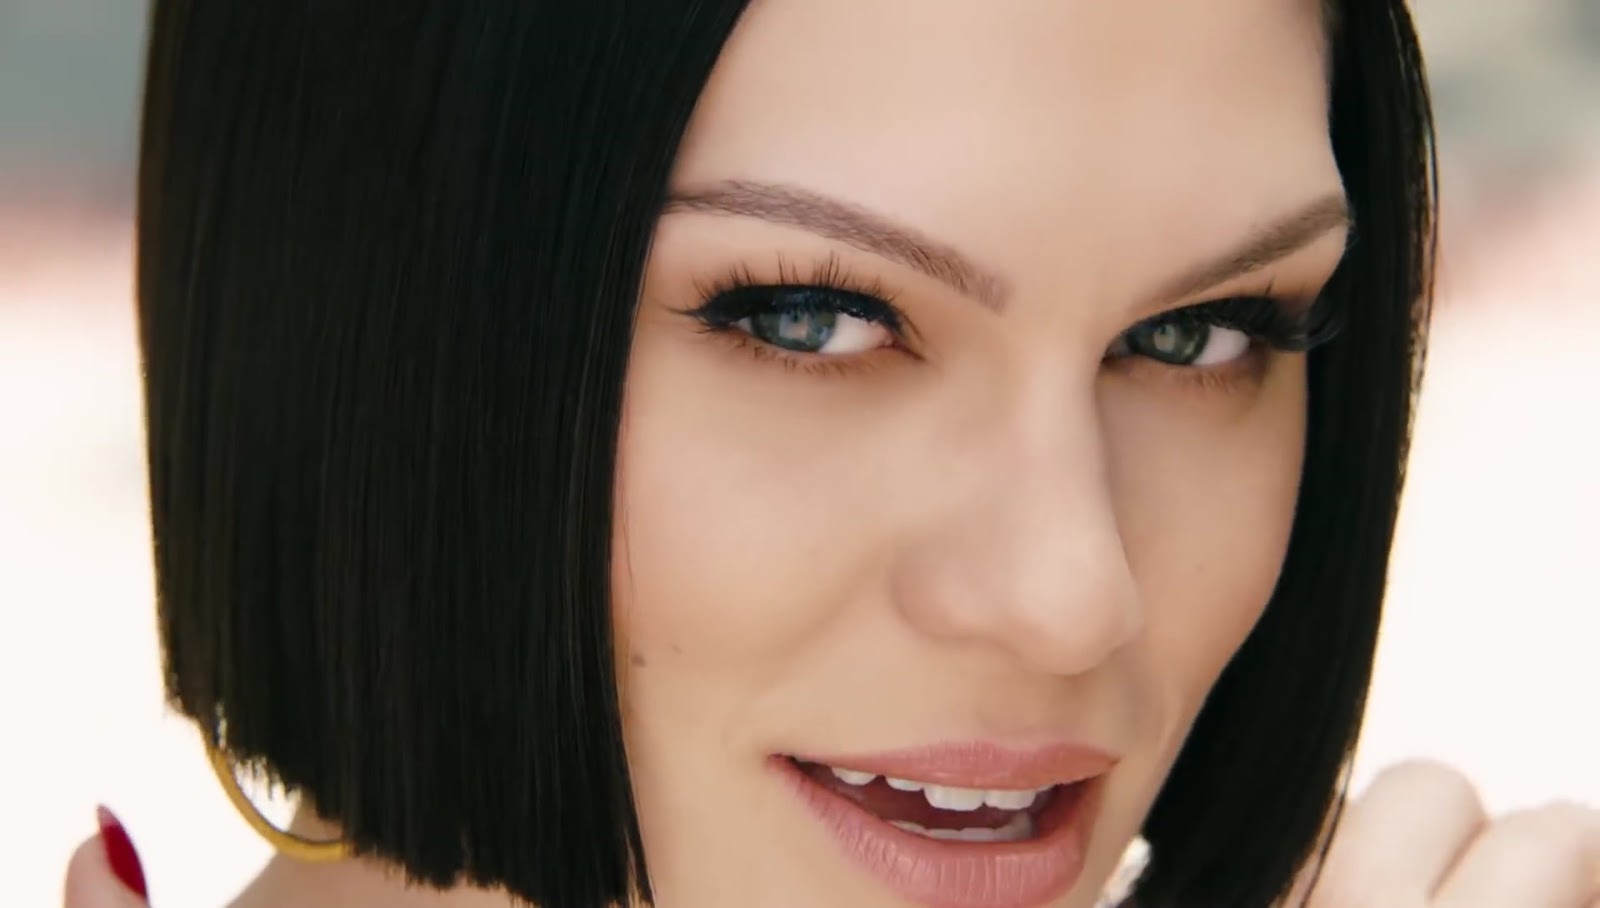 Jessie J : YouTube Music Videos by Jessie J1600 x 908